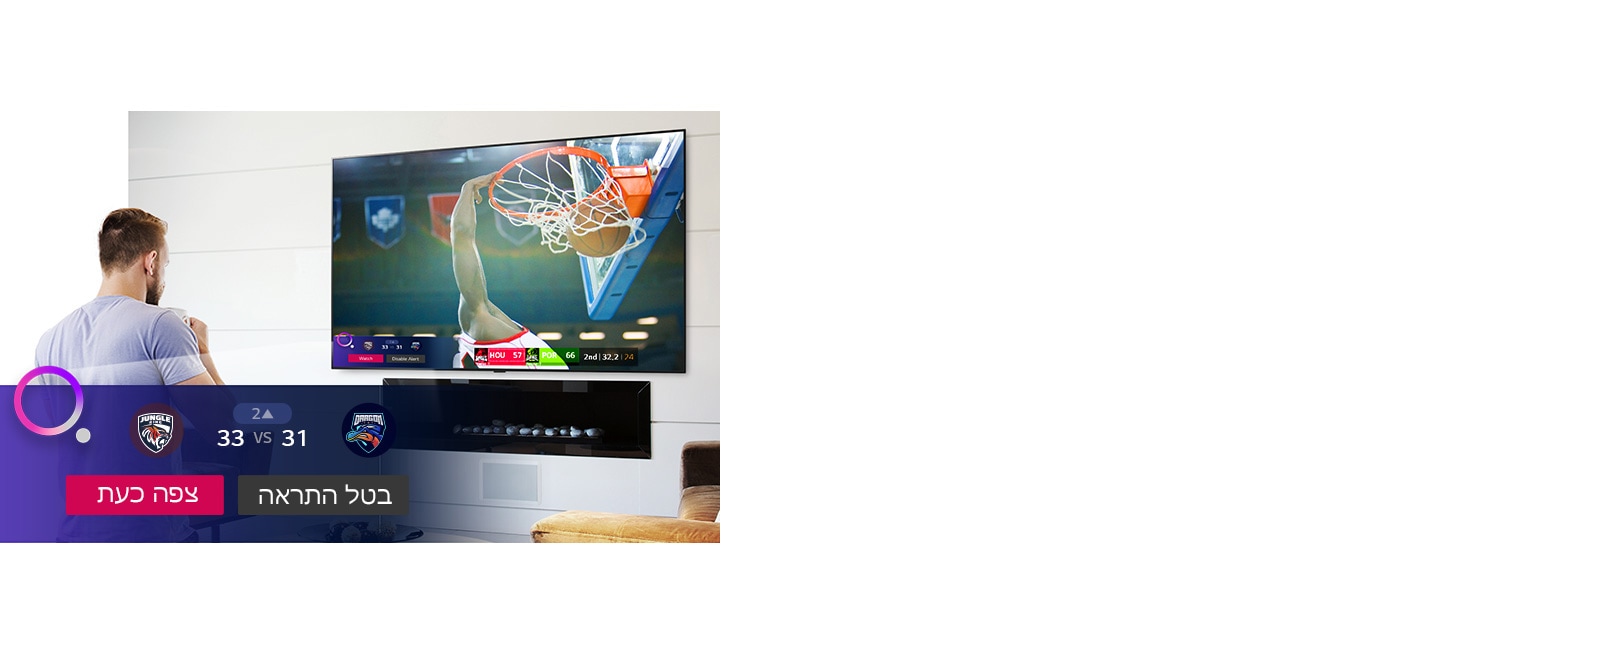 מסך הטלוויזיה מציג סצנה ממשחק כדורסל עם התראת ספורט